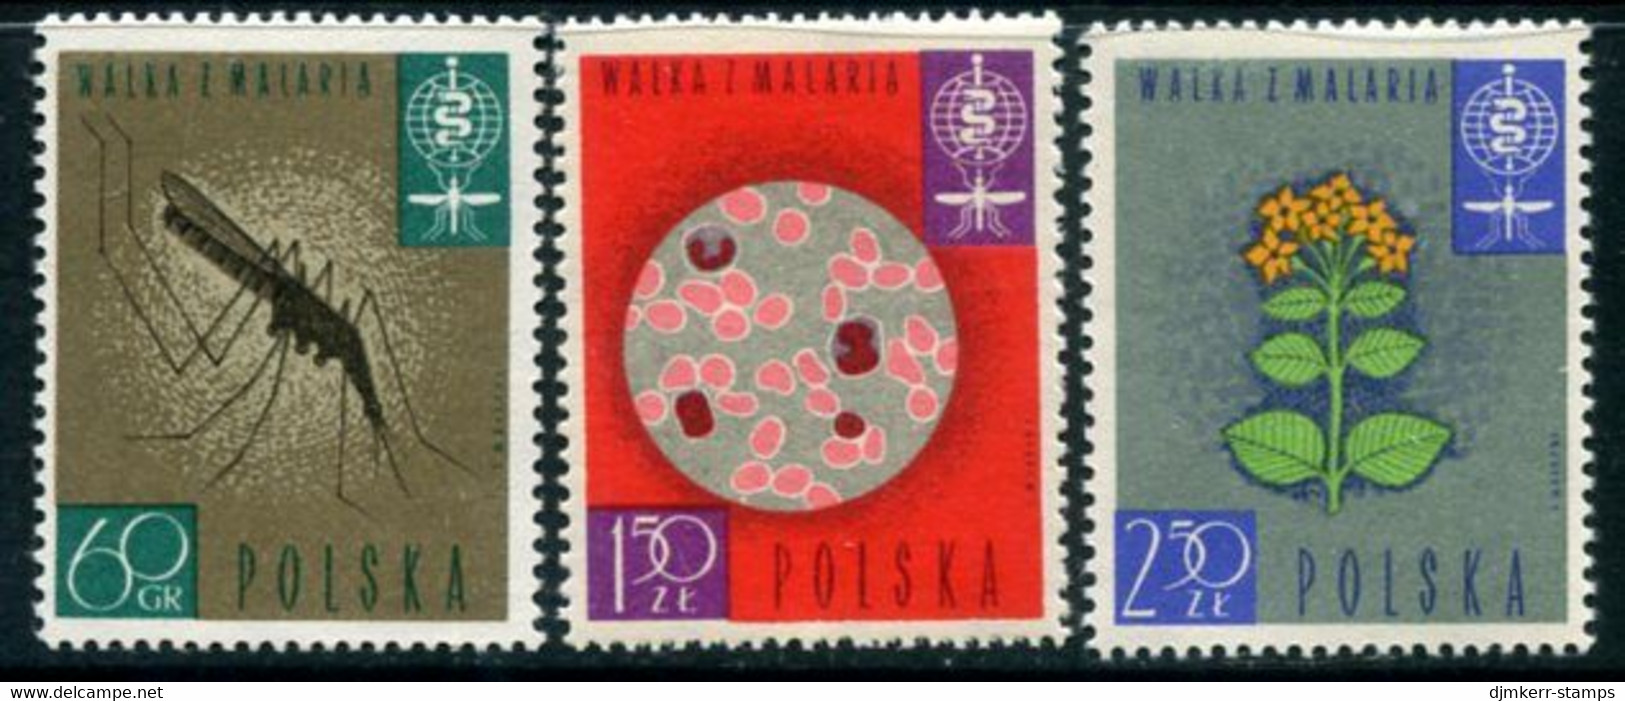 POLAND 1962 Malaria Campaign MNH / **  Michel 1346-48 - Nuovi